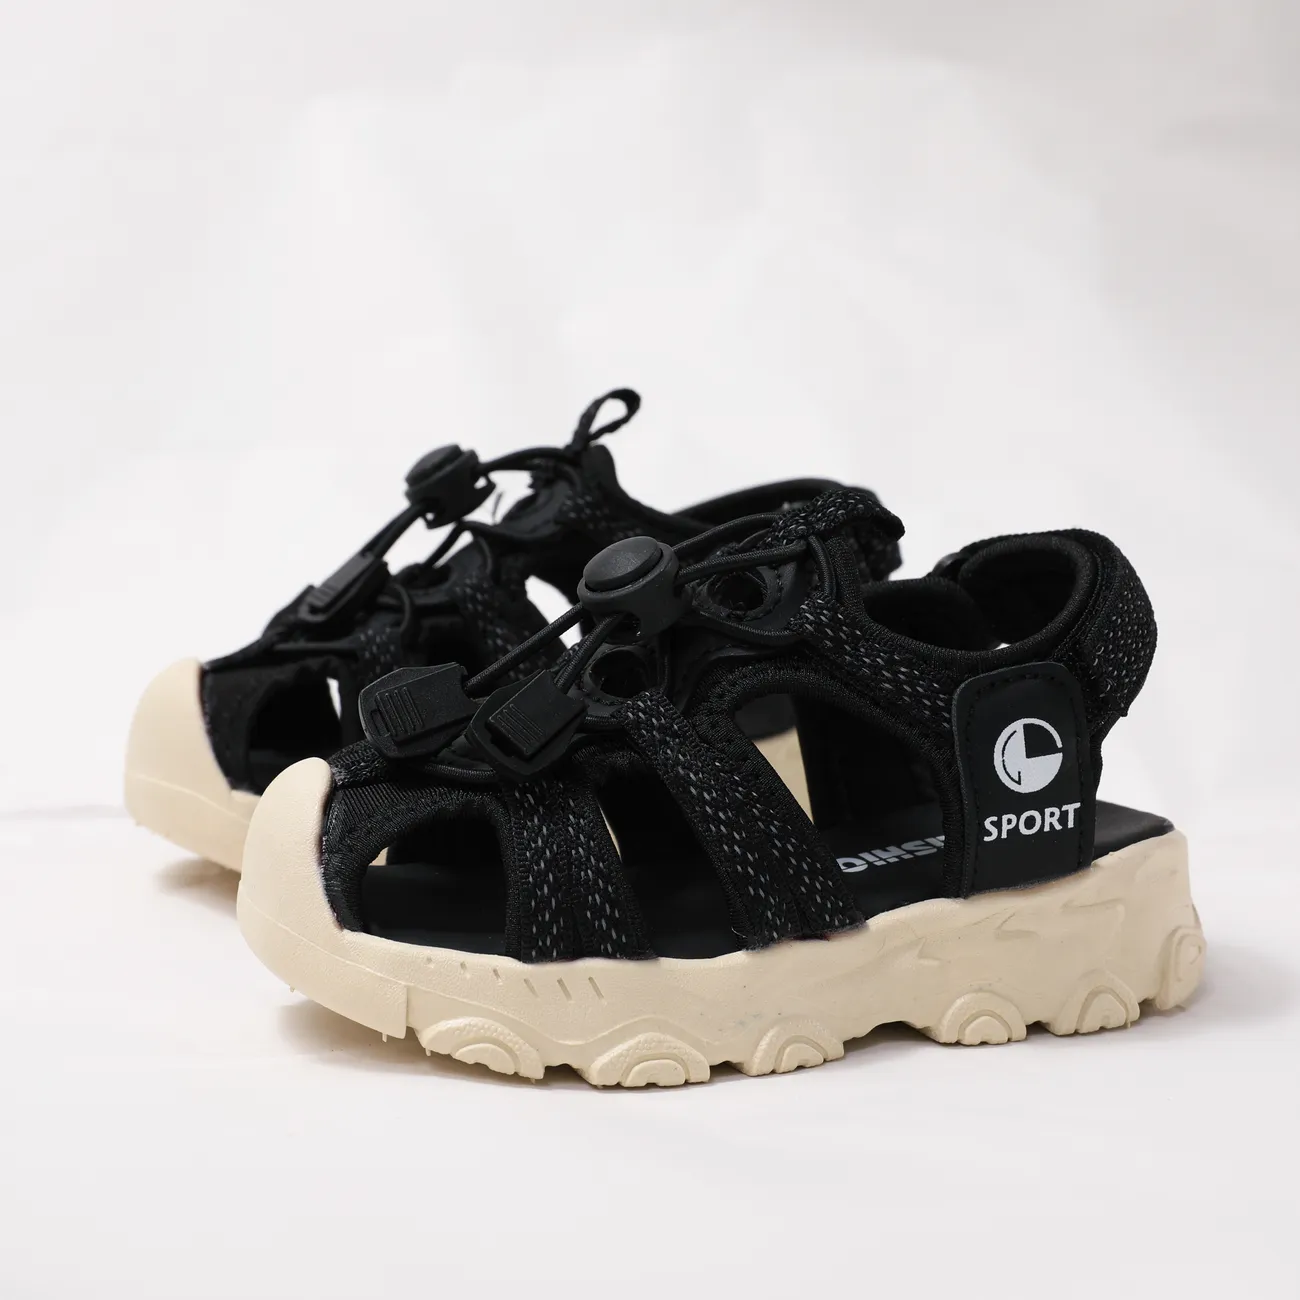 Toddler/Kid Sporty Solid Color Rubber Sandals Black big image 1